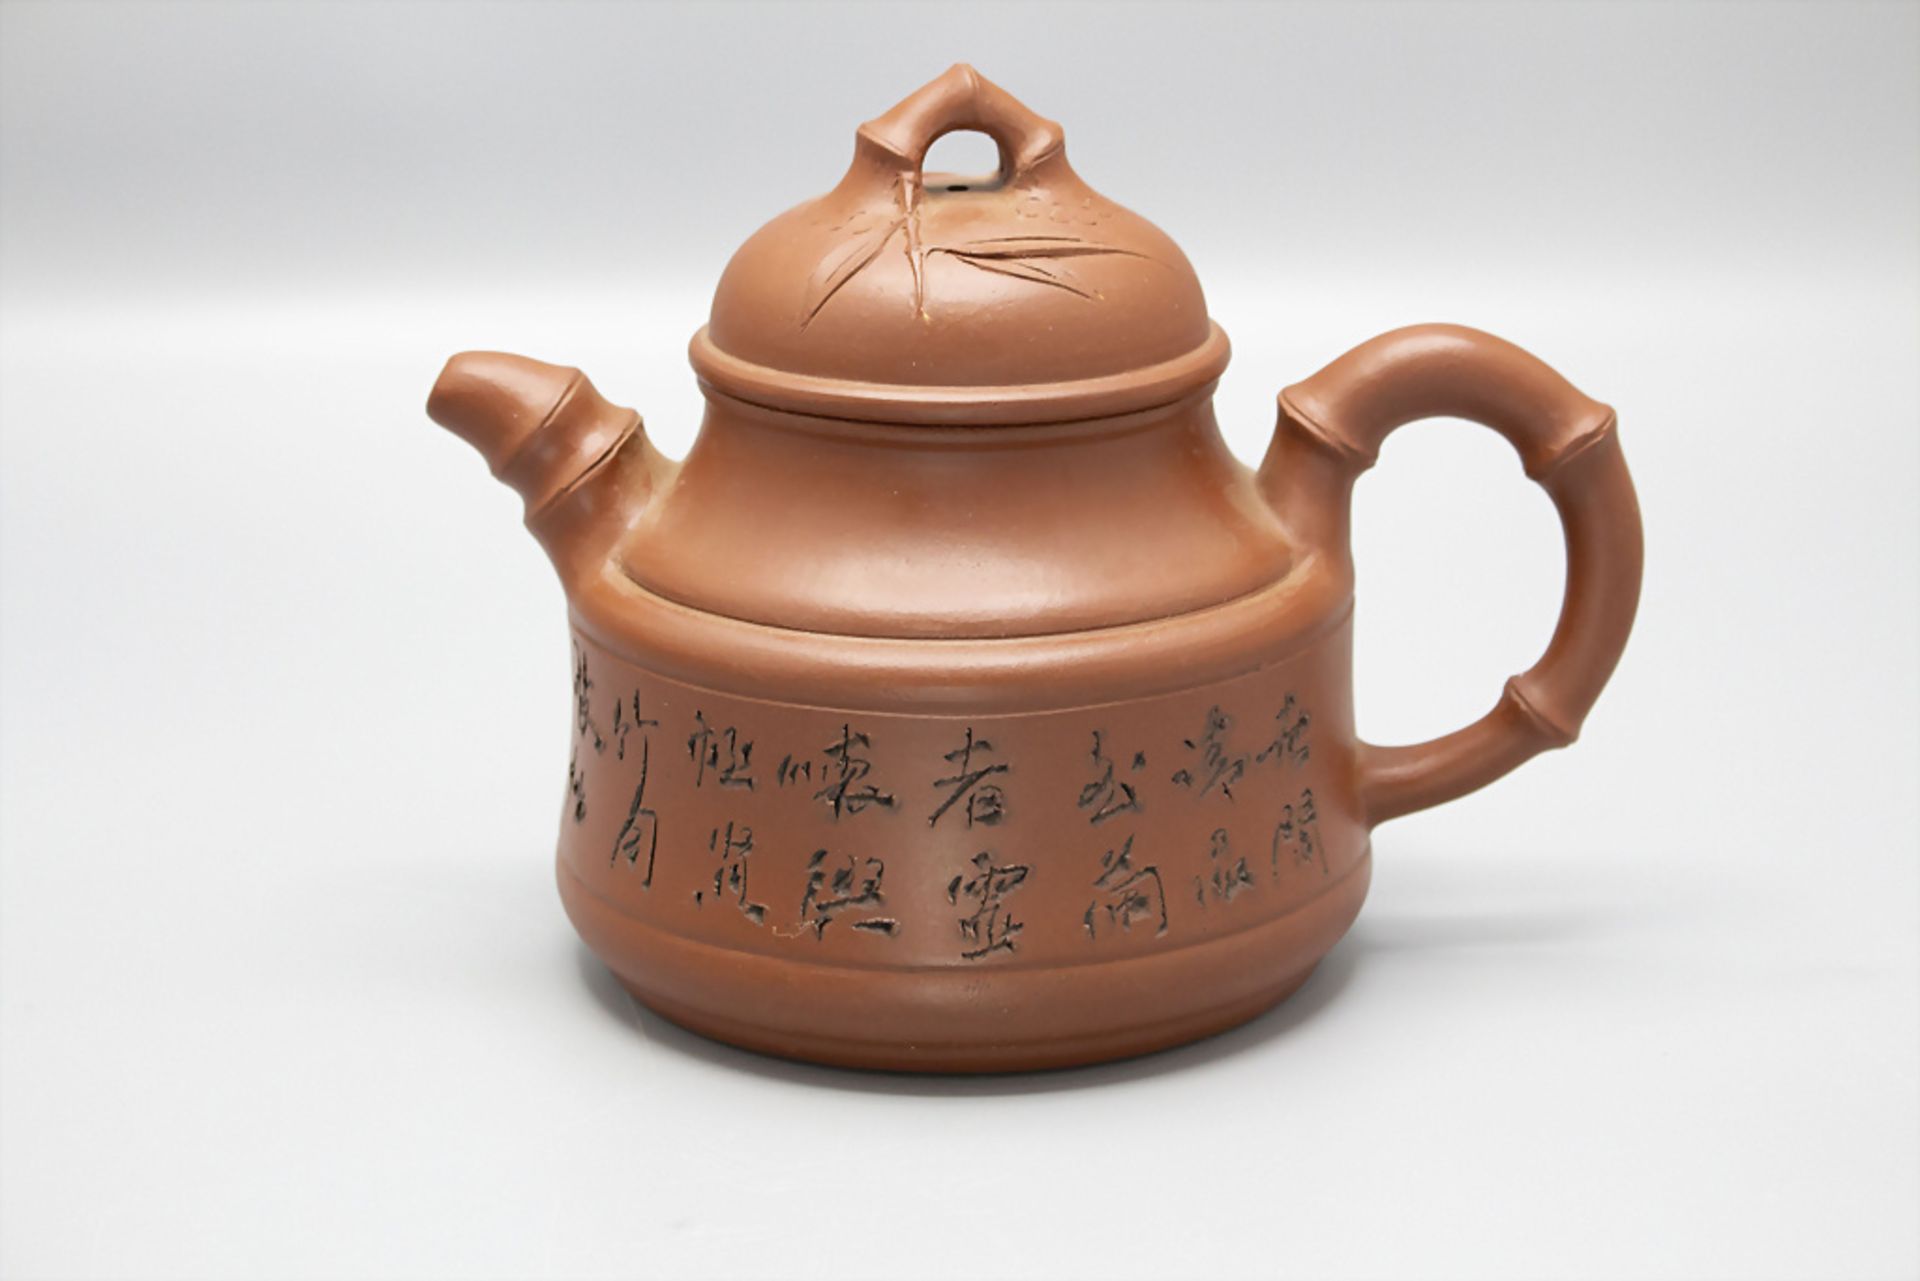 Bambus Teekanne mit Inschrift / A bamboo teapot with inscription, China, um 20. Jh.